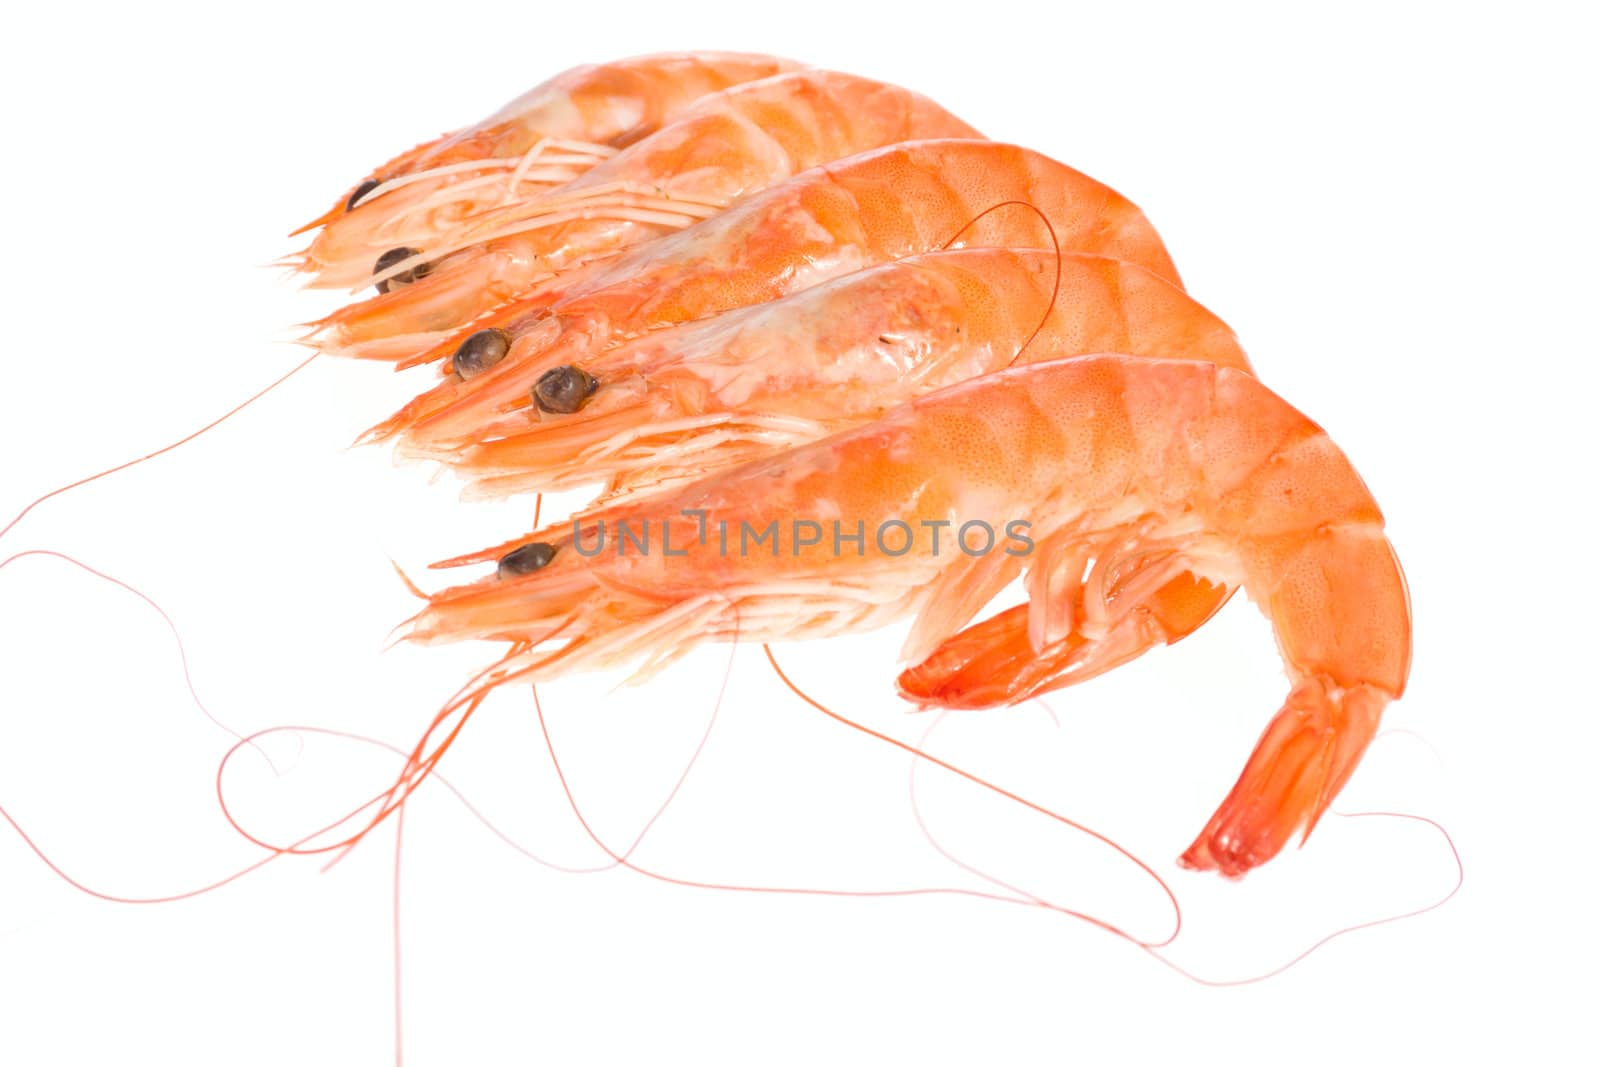 fresh shrimp, photo on the white background 